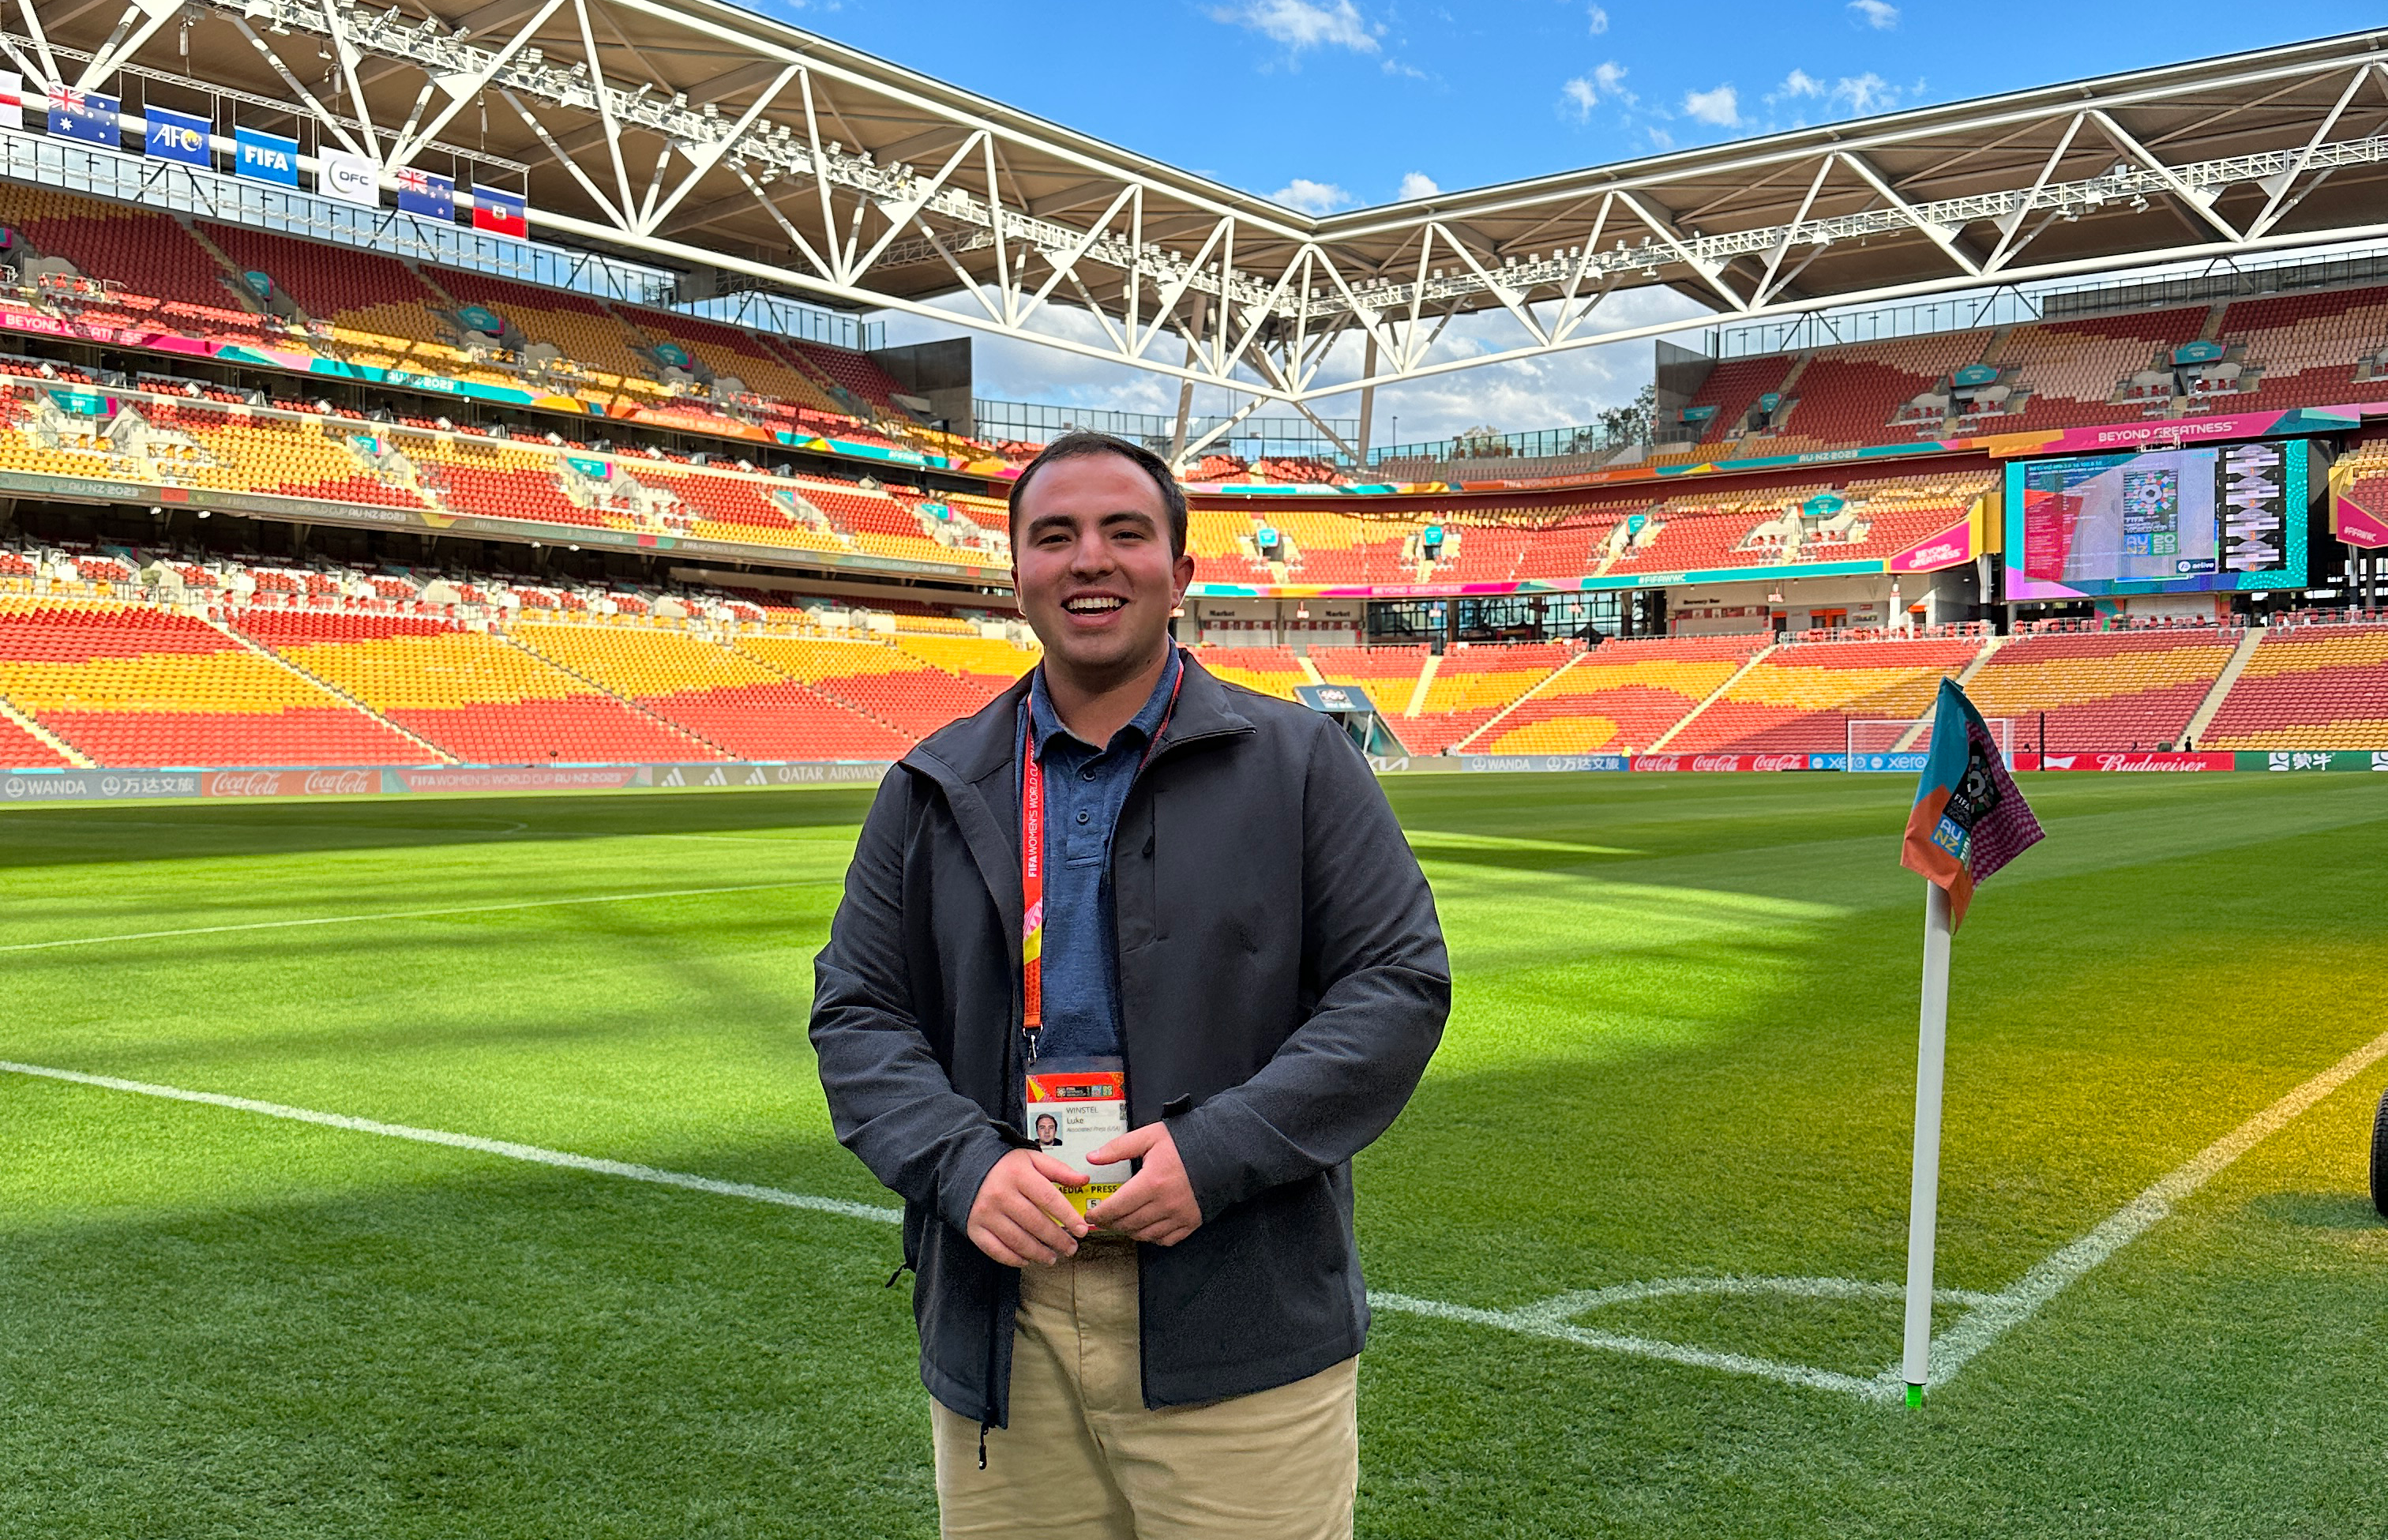 Luke Winstel stands on a Women's World Cup soccer field